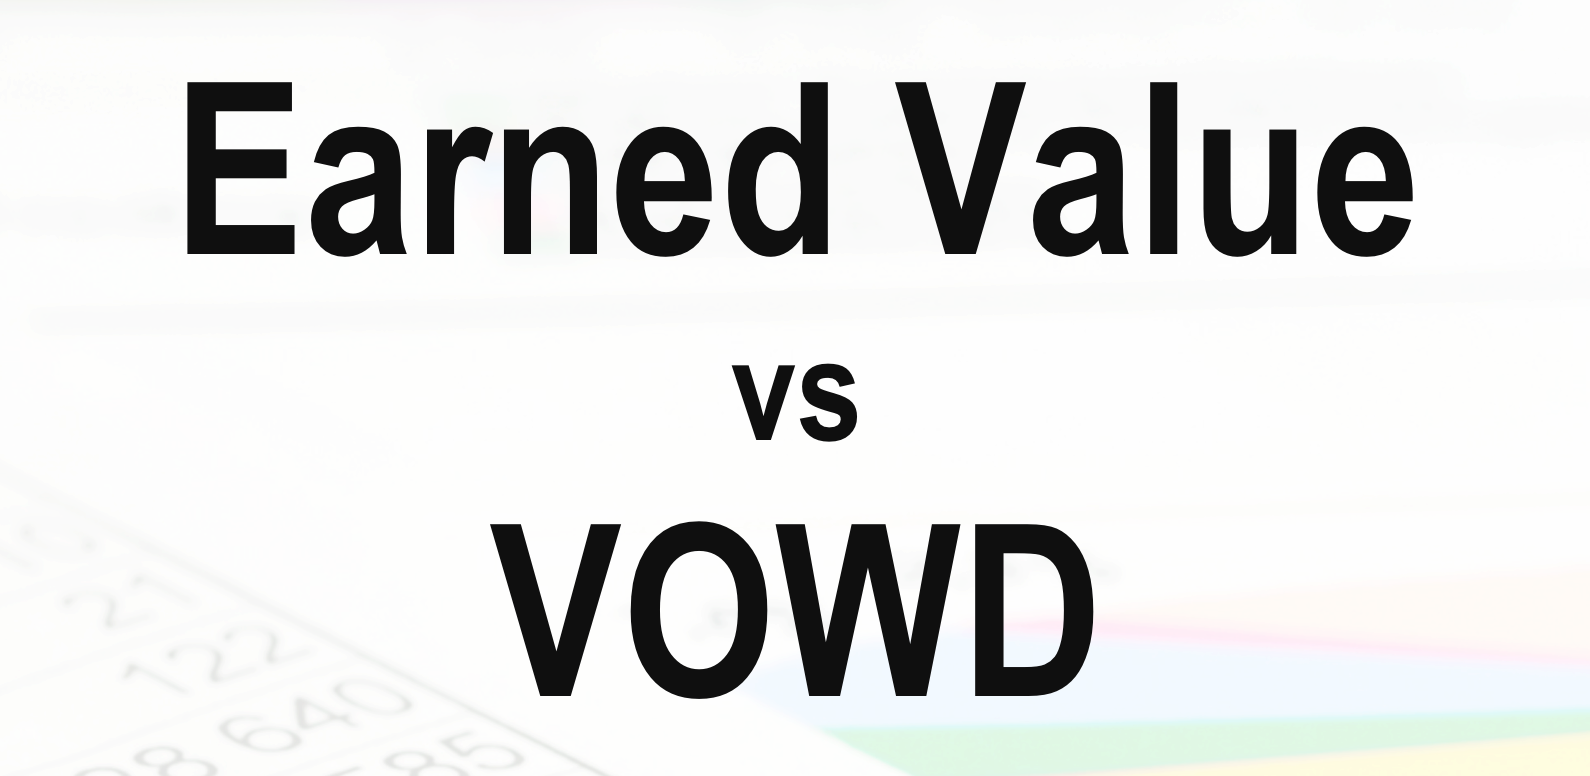 Earned Value vs VOWD